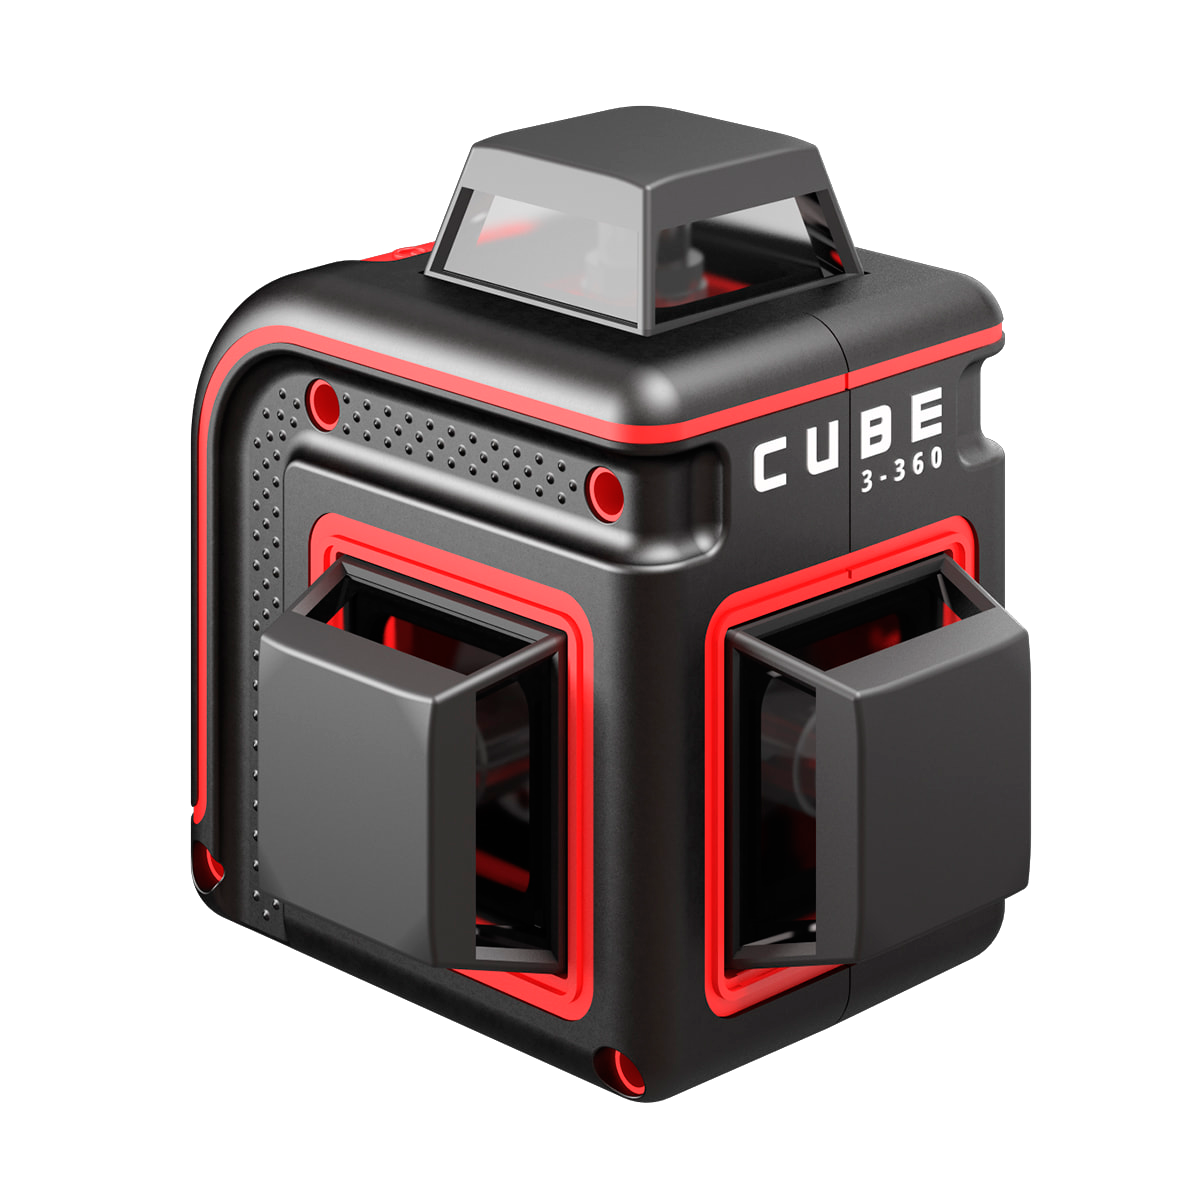 Лазерный уровень ada Cube 3-360 Home Edition а00565. Нивелир лазерный ada Cube 360 professional Edition. Лазерный уровень ada Cube 360 Basic Edition. Лазерный уровень ada Cube 3-360 Green Basic Edition. Купить лазерный уровень ада